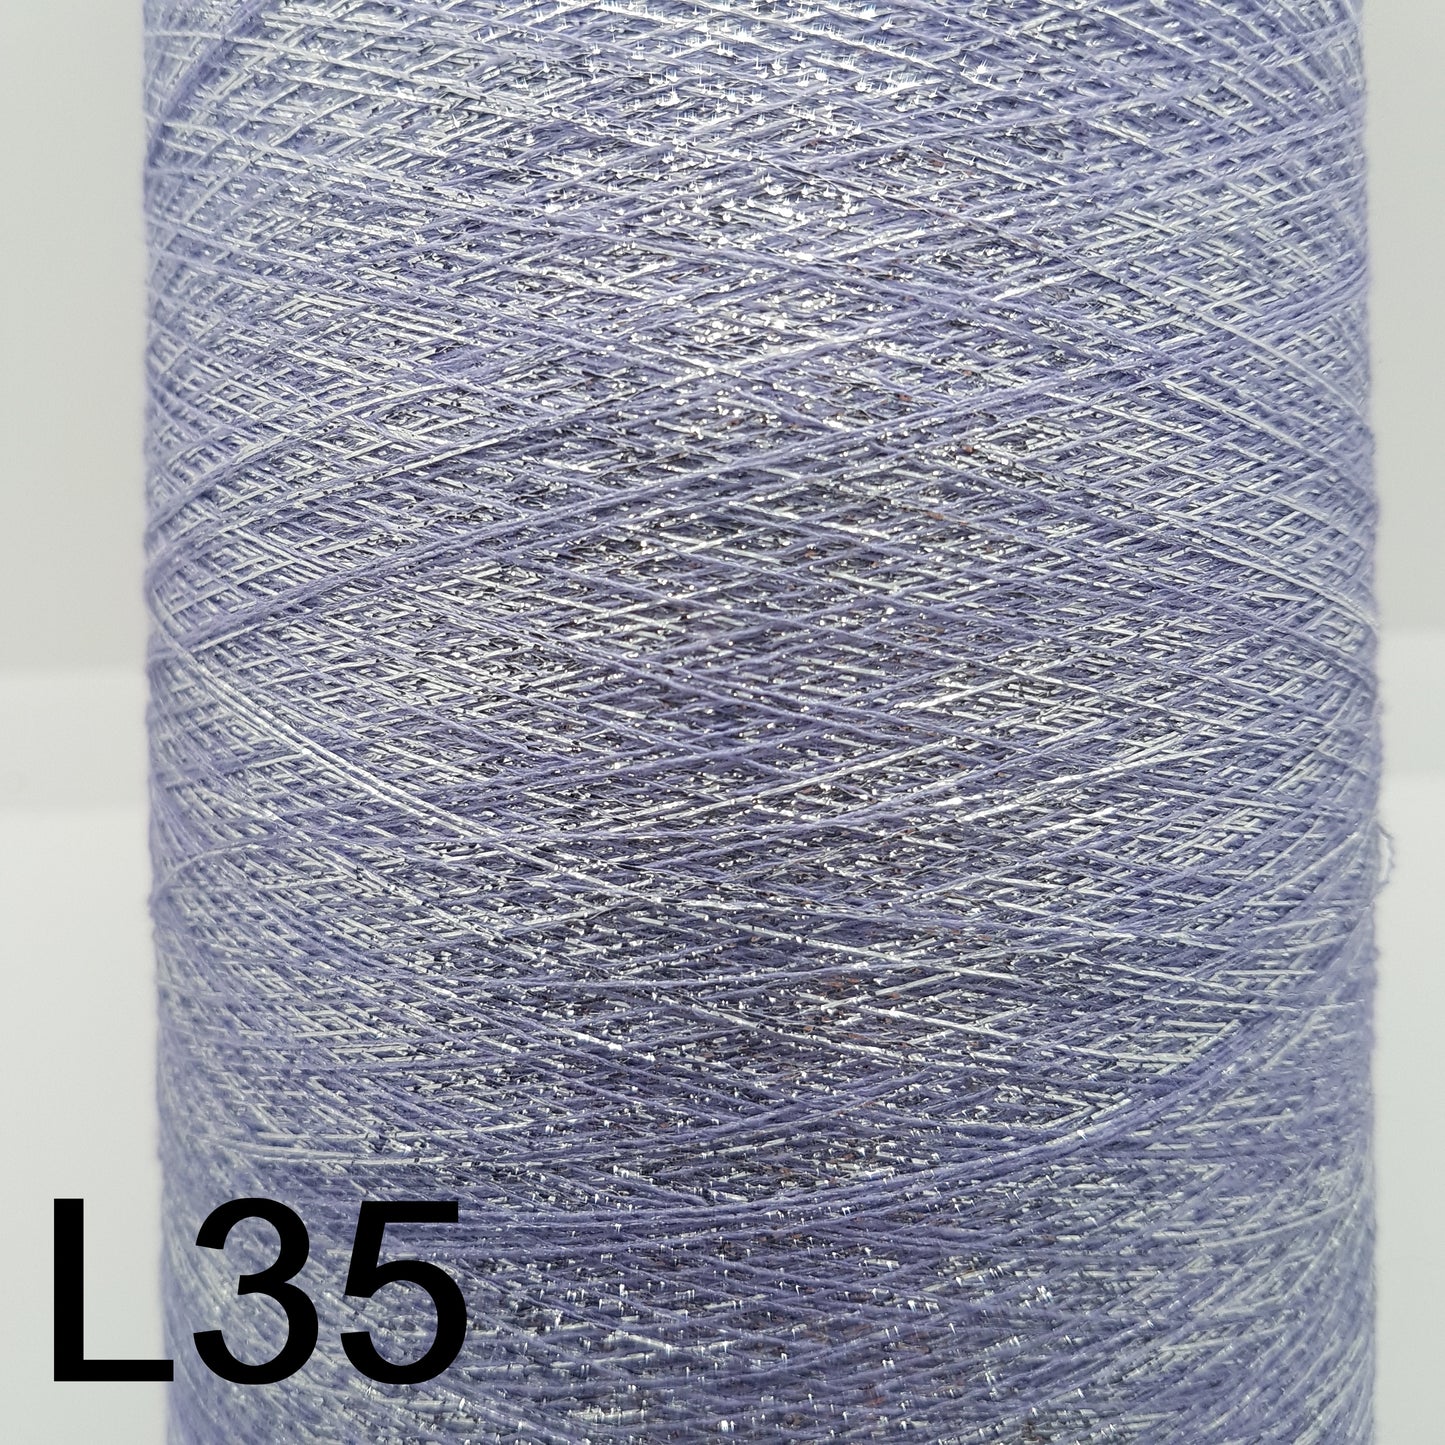 Lurex italien fil lilas couleur lavande l34-l35